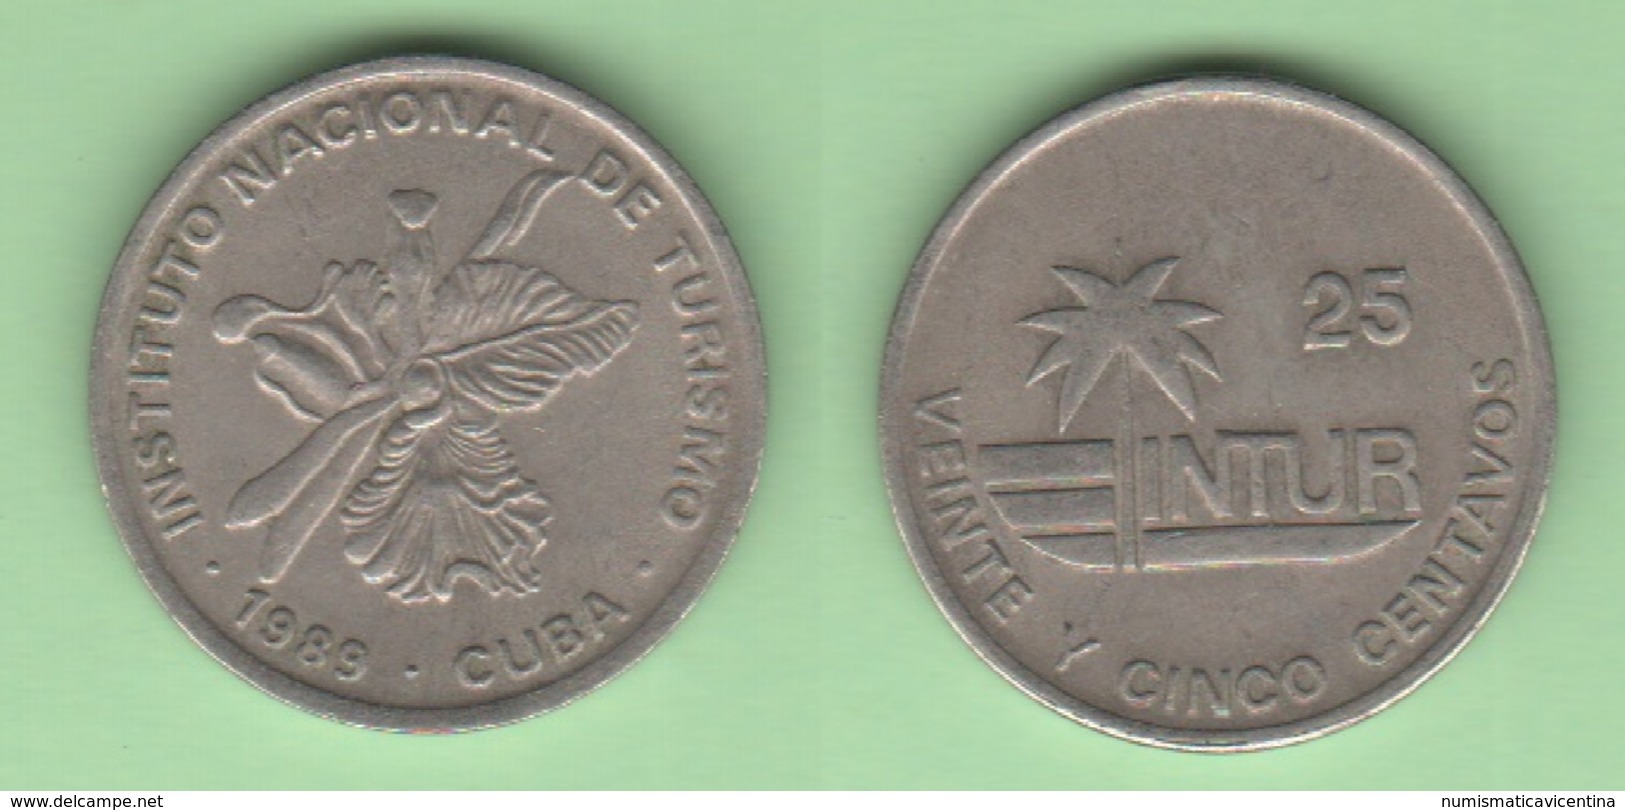 Cuba 25 Centavos 1989 Small 25 Visitor Coins - Cuba